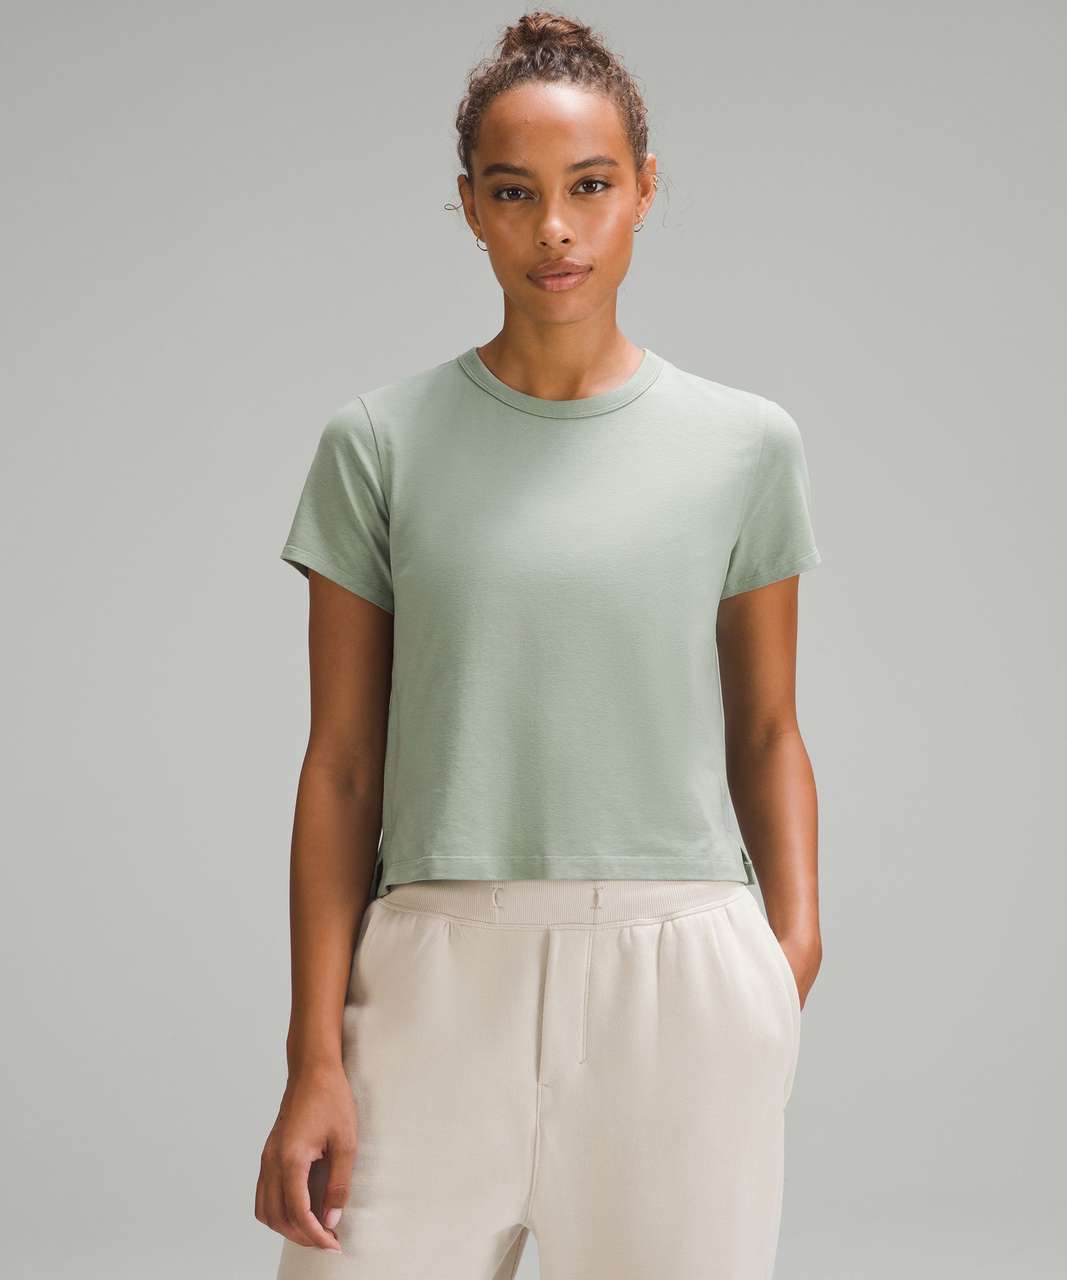 Lululemon Classic-Fit Cotton-Blend T-Shirt - Palm Court